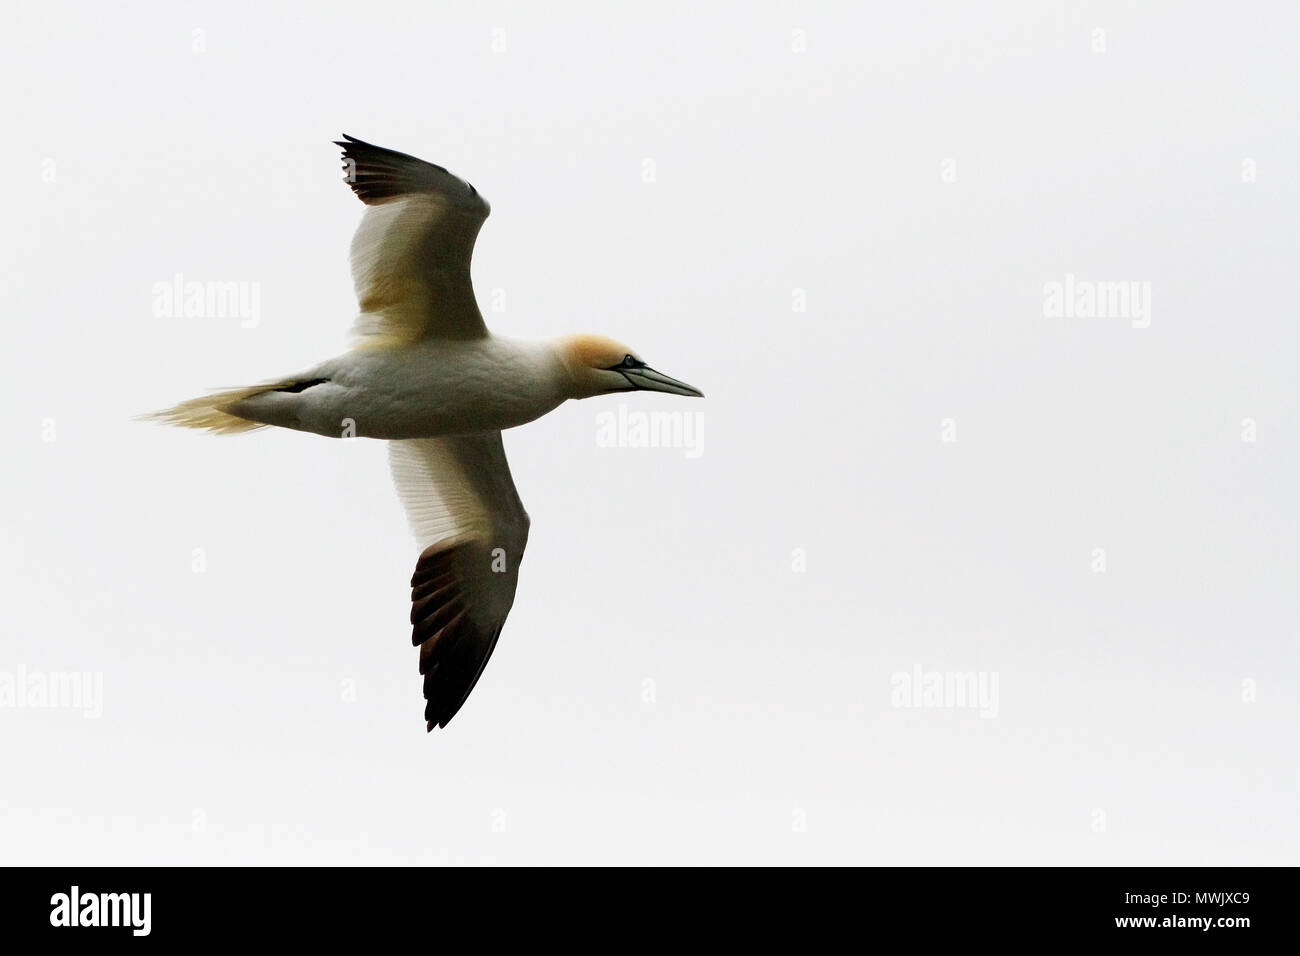 Uno de los más grandes de aves marinas en el Atlántico Norte, en el norte de Gannett es espectacular ya que se sumerge en el mar en busca de peces. Foto de stock